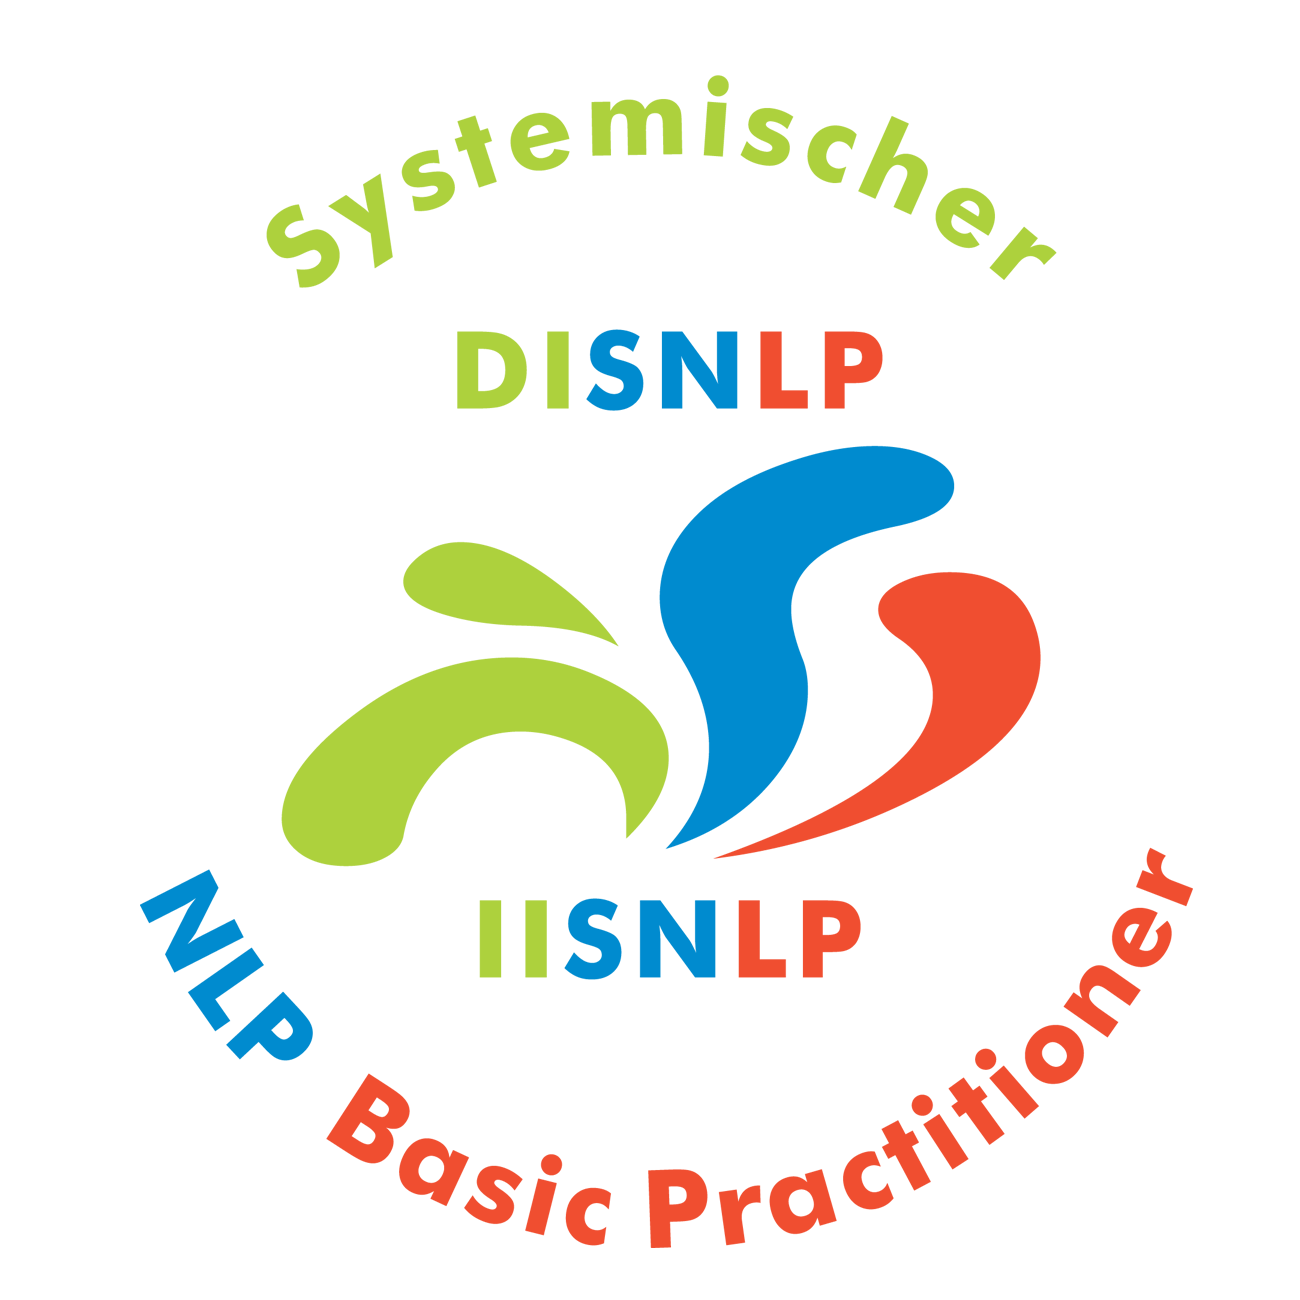 Seminar Selbstbewusstsein, Selbstvertrauen, Selbstwert, Selbstsicherheit stärken Wuerzburg Stadt mit NLP Coaching Kurs für mehr Selbstbewusstsein